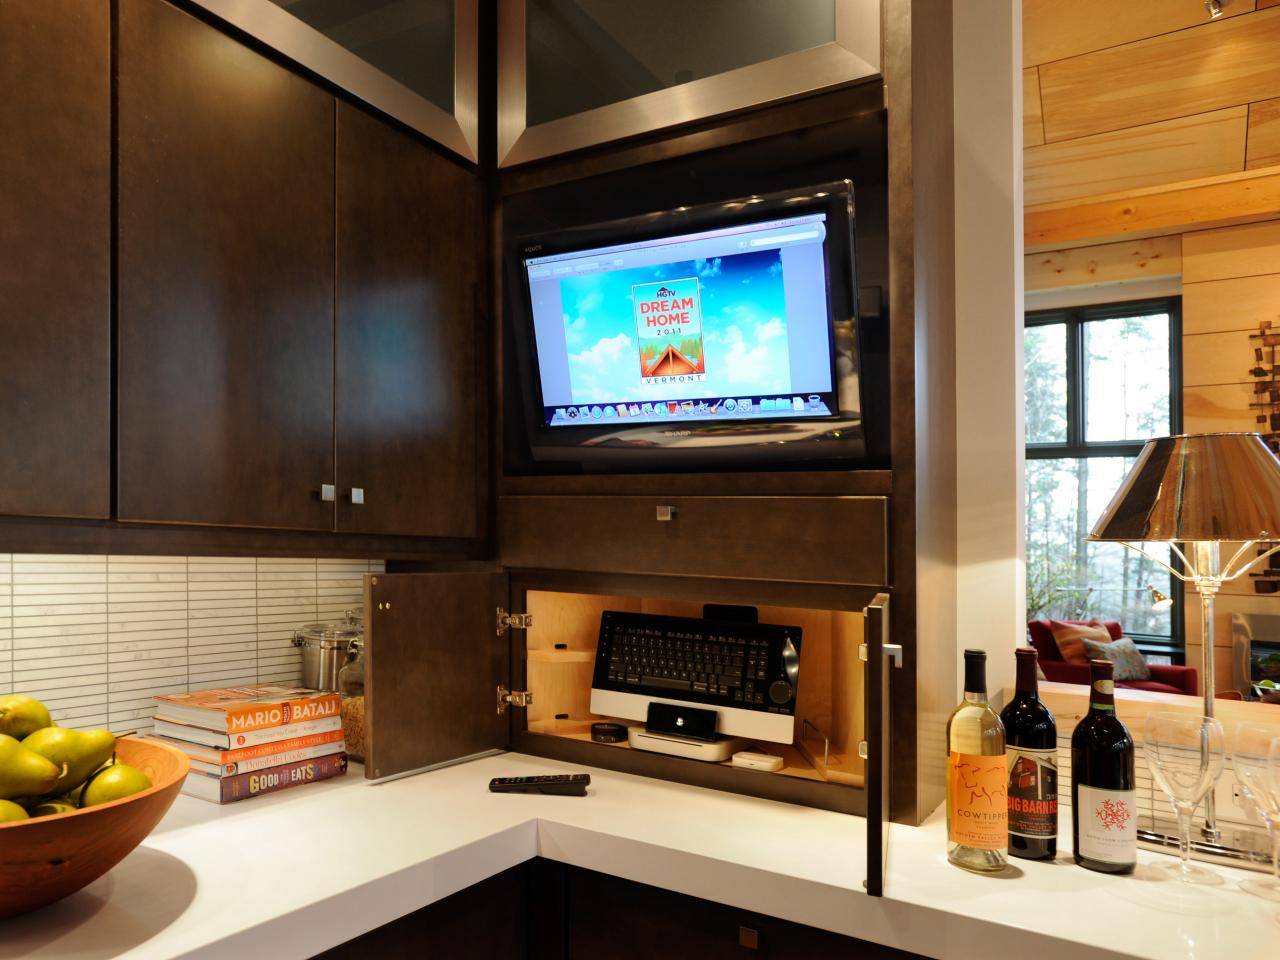 Телевизор на кухне: 135+ (фото) дизайн с маленьким и большим